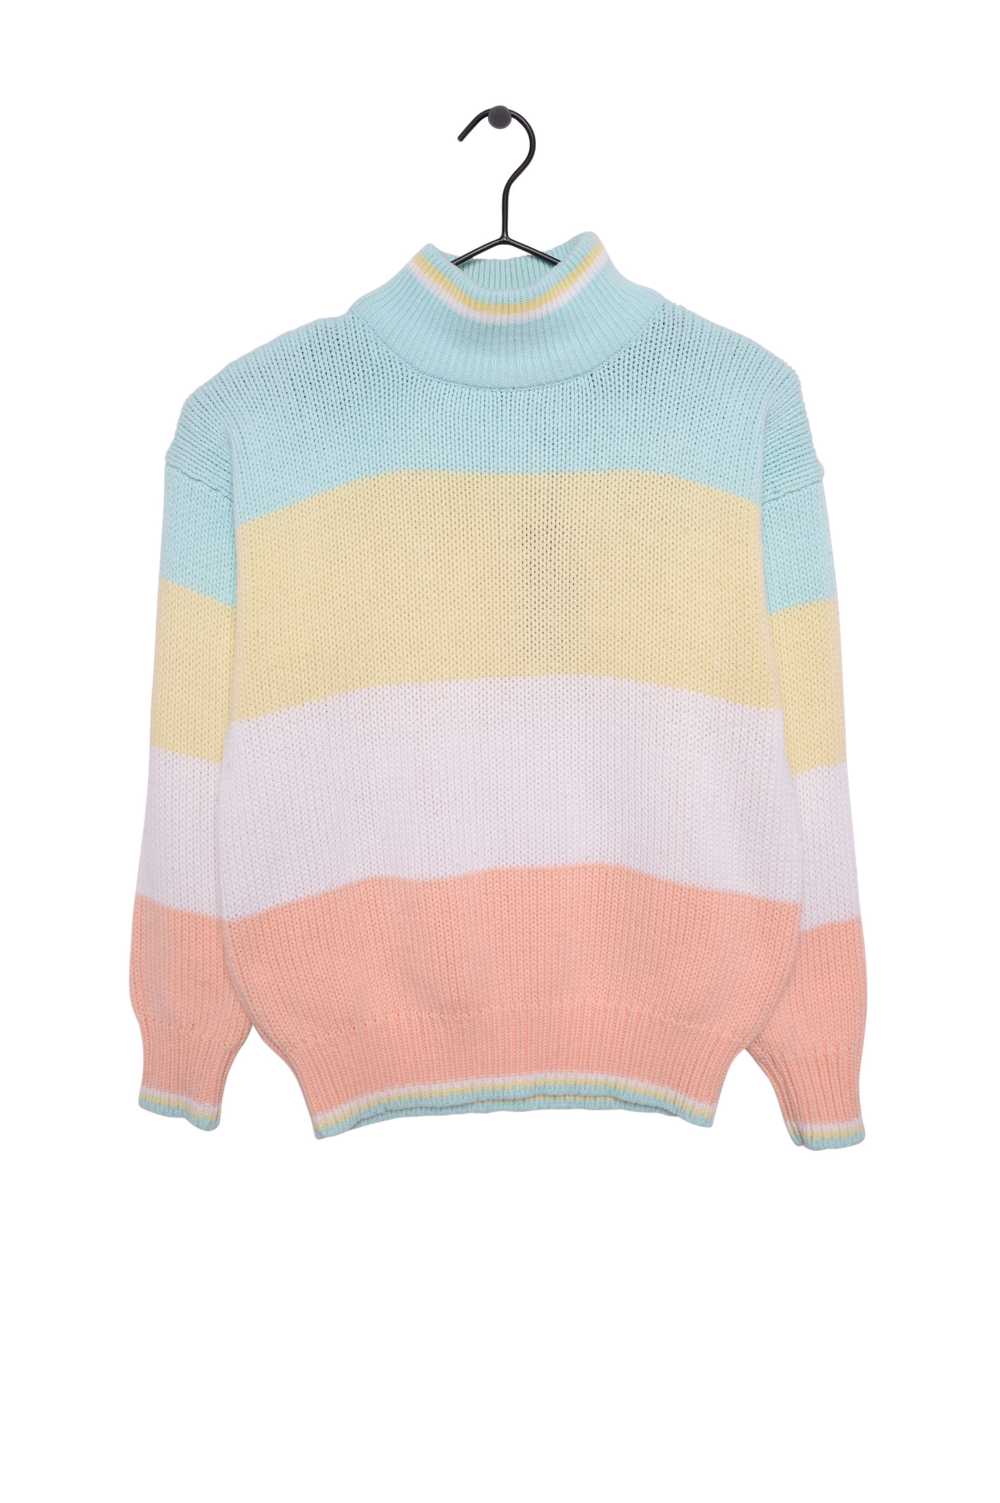 Pastel Stripe Turtleneck Sweater - image 1